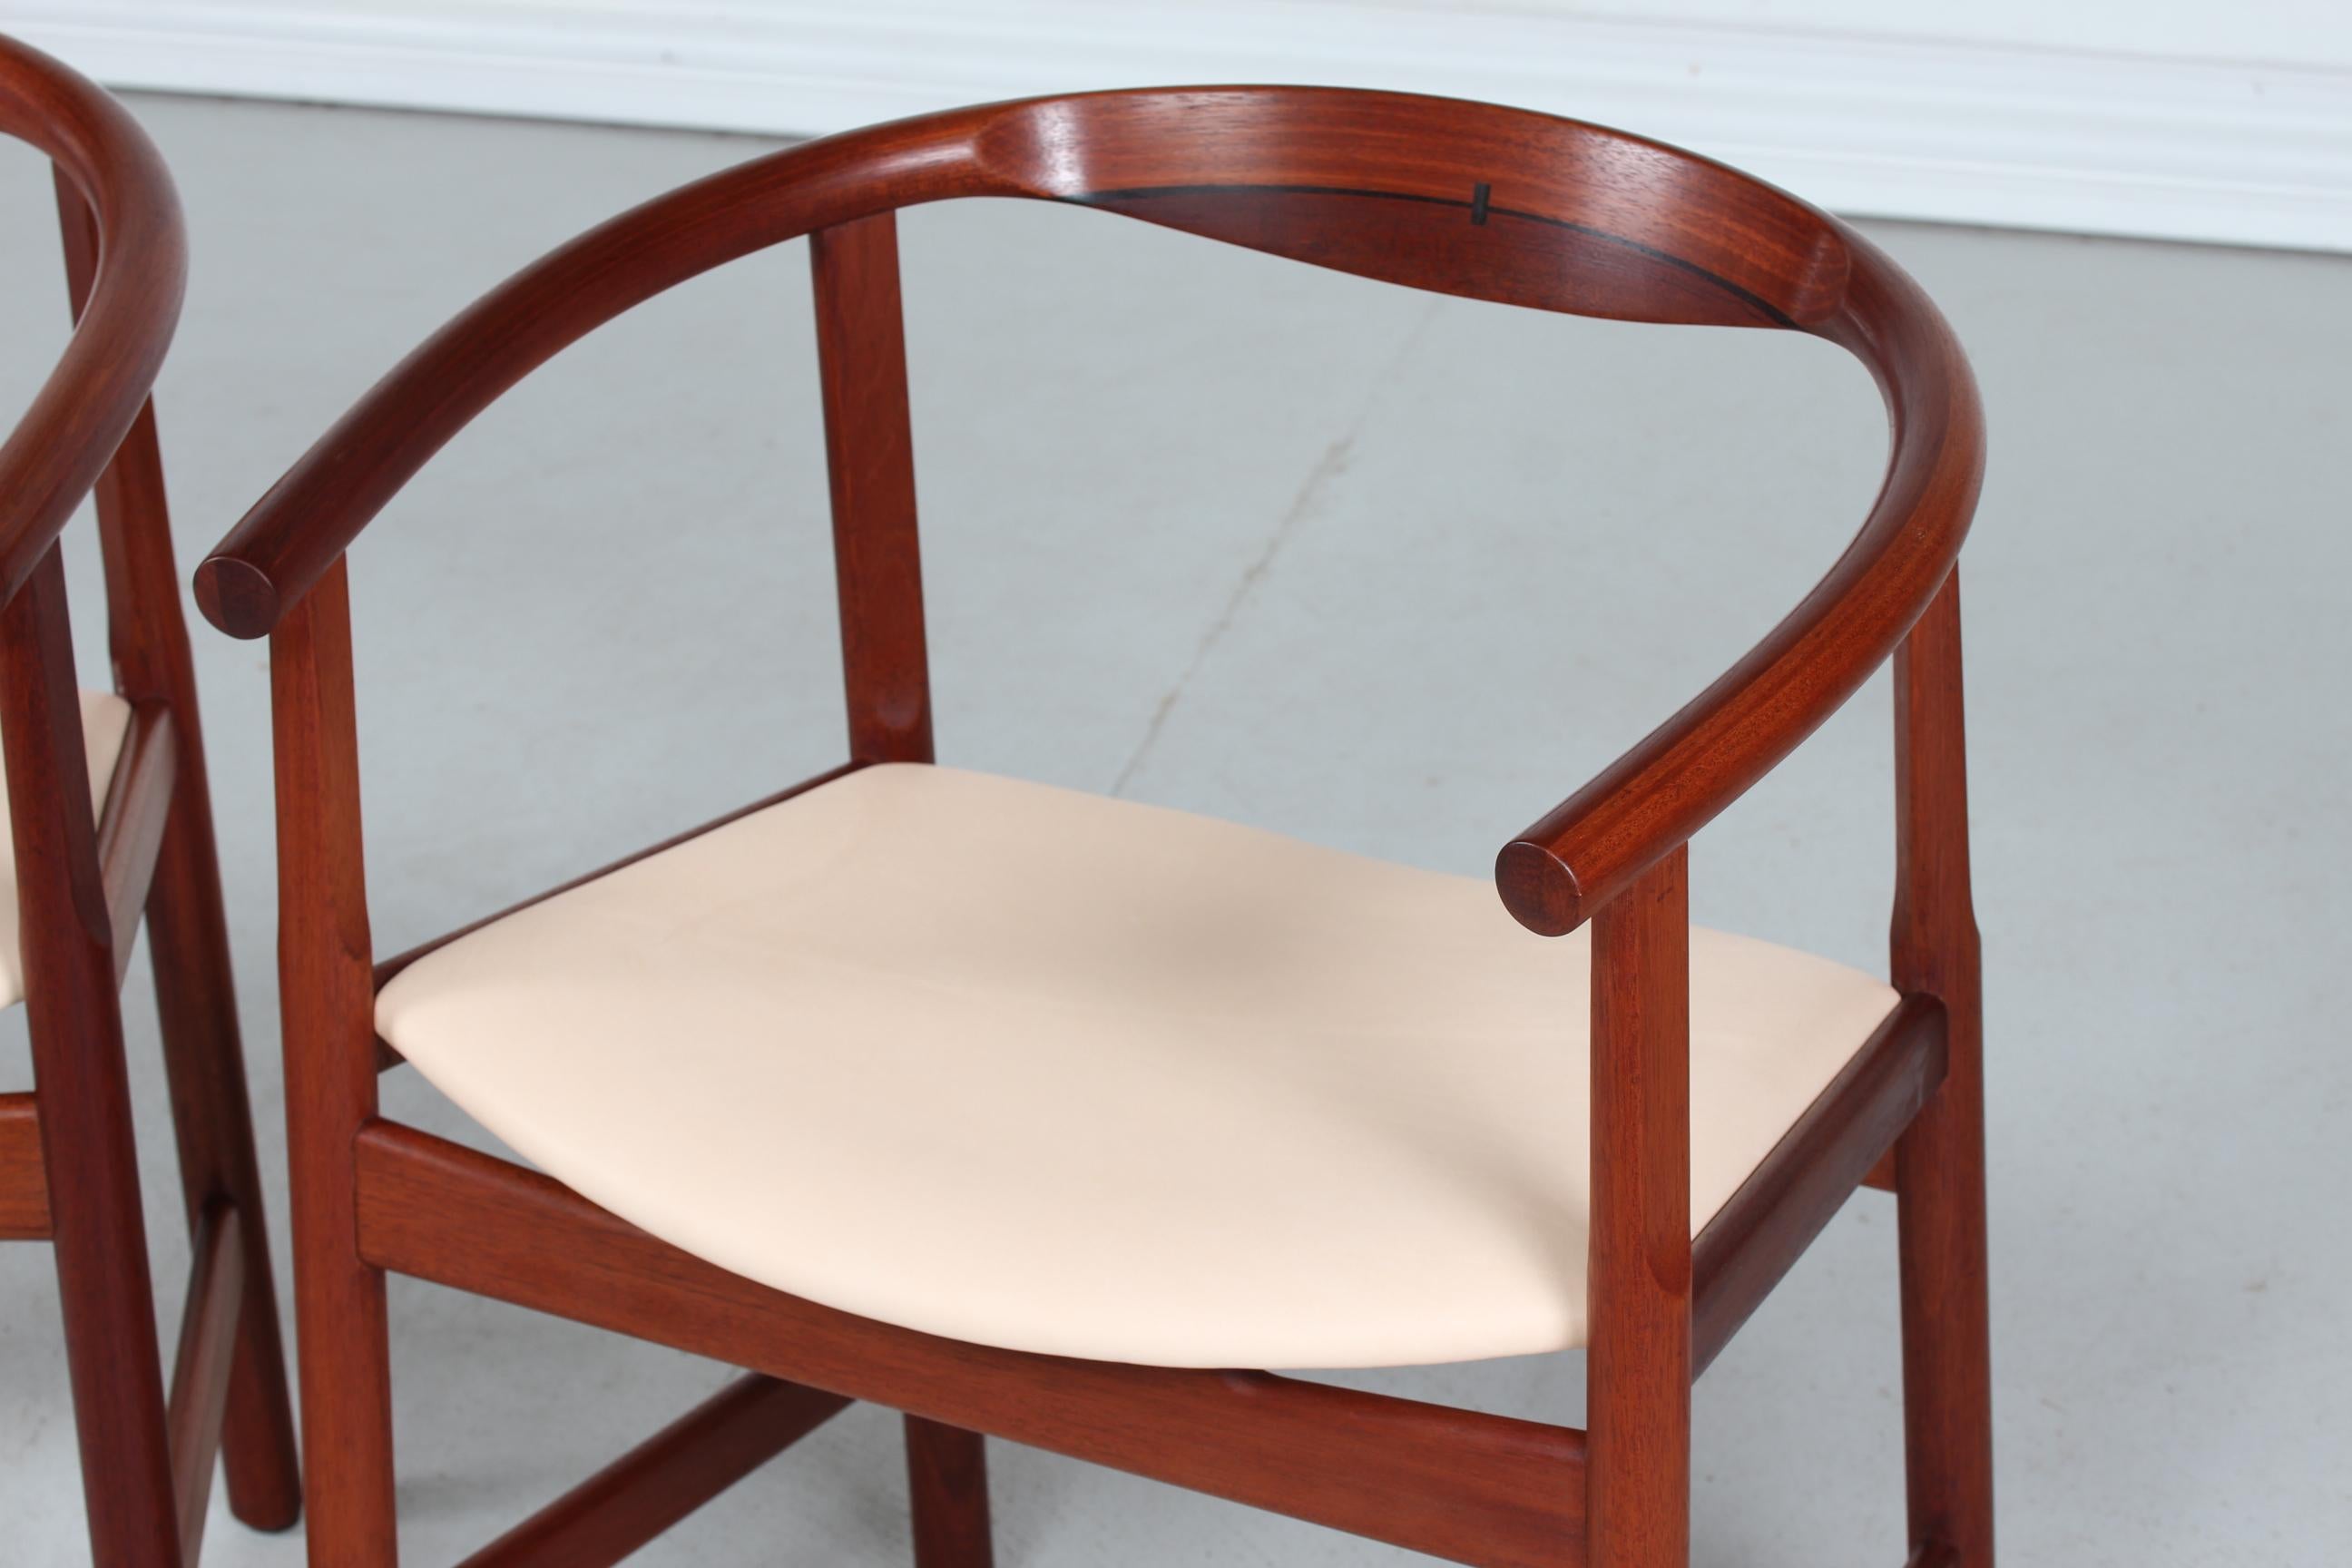 Paar Sessel Modell PP 203 des dänischen Designers Hans J. Wegner aus dem Jahr 1969, hergestellt von PP Furniture.
Die Sessel sind aus massivem Mahagoniholz mit Ölbehandlung und neuer Polsterung mit natürlichem Anilinleder gefertigt.
Diese